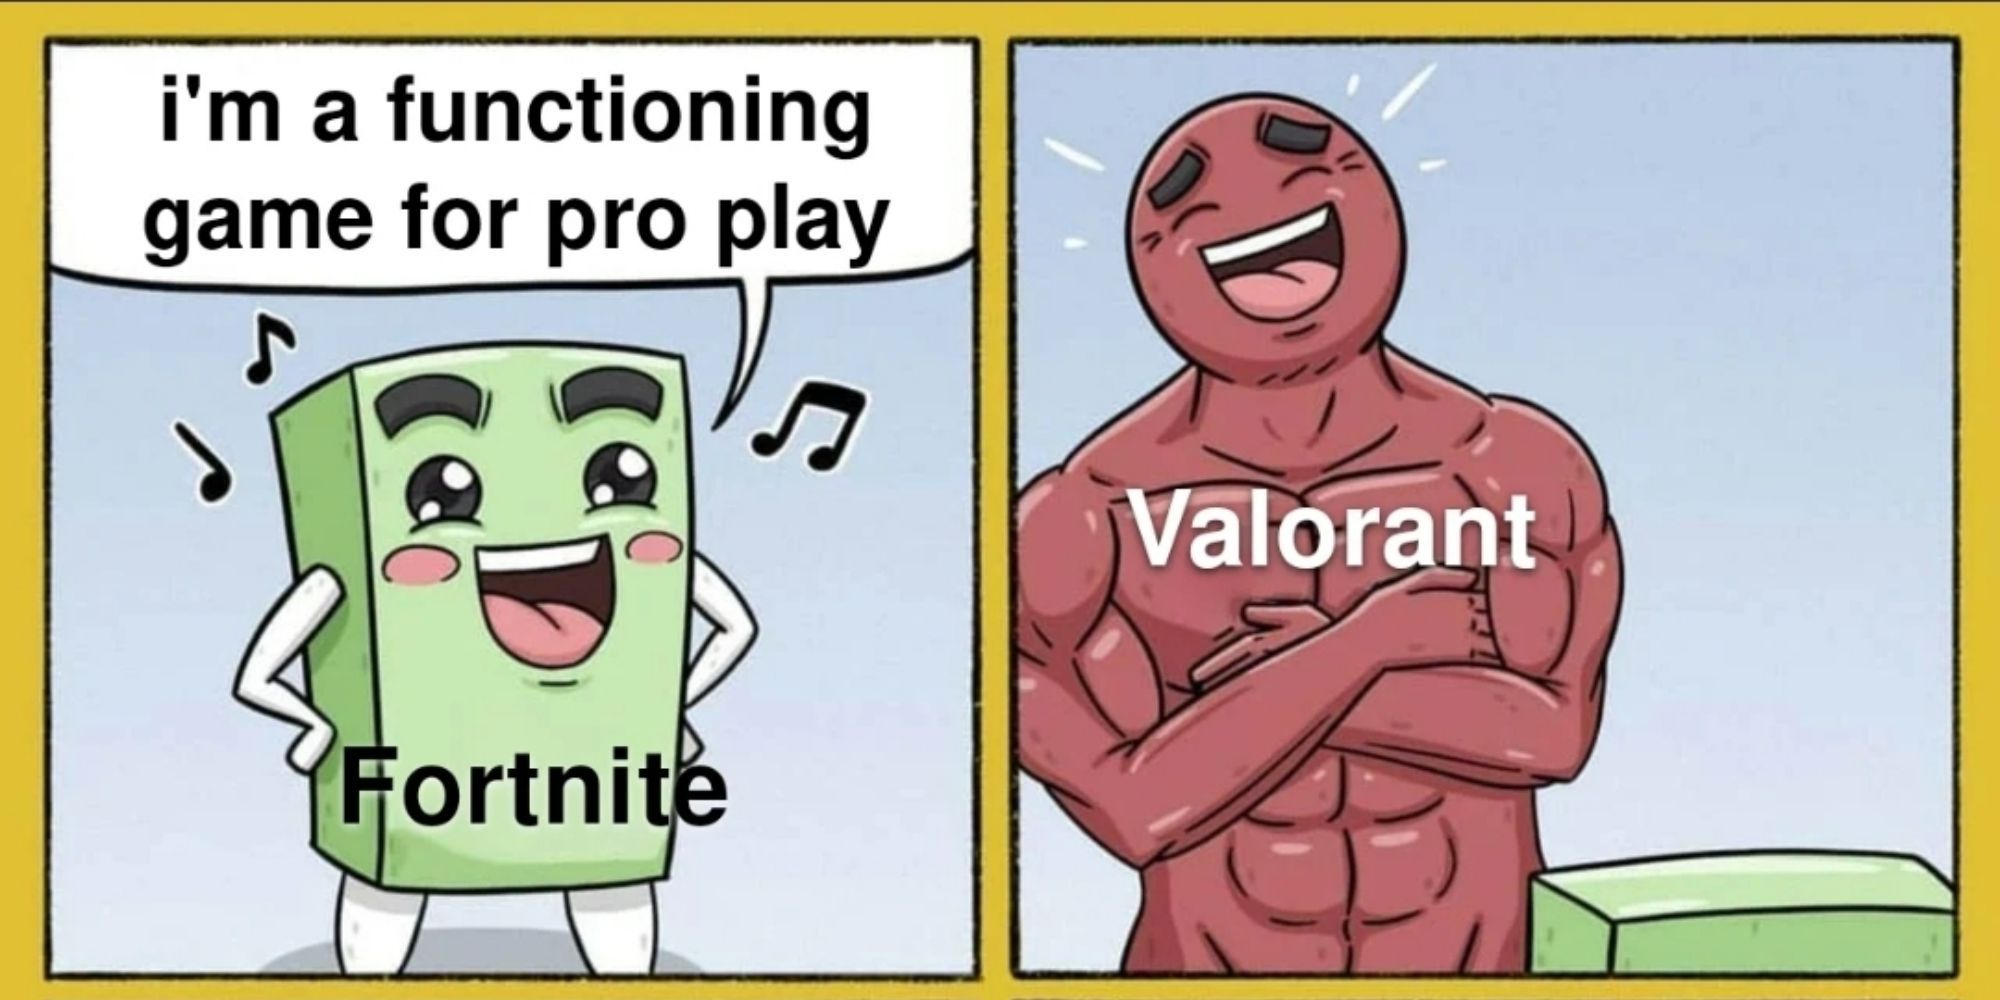 Valorant - Pro Play Meme